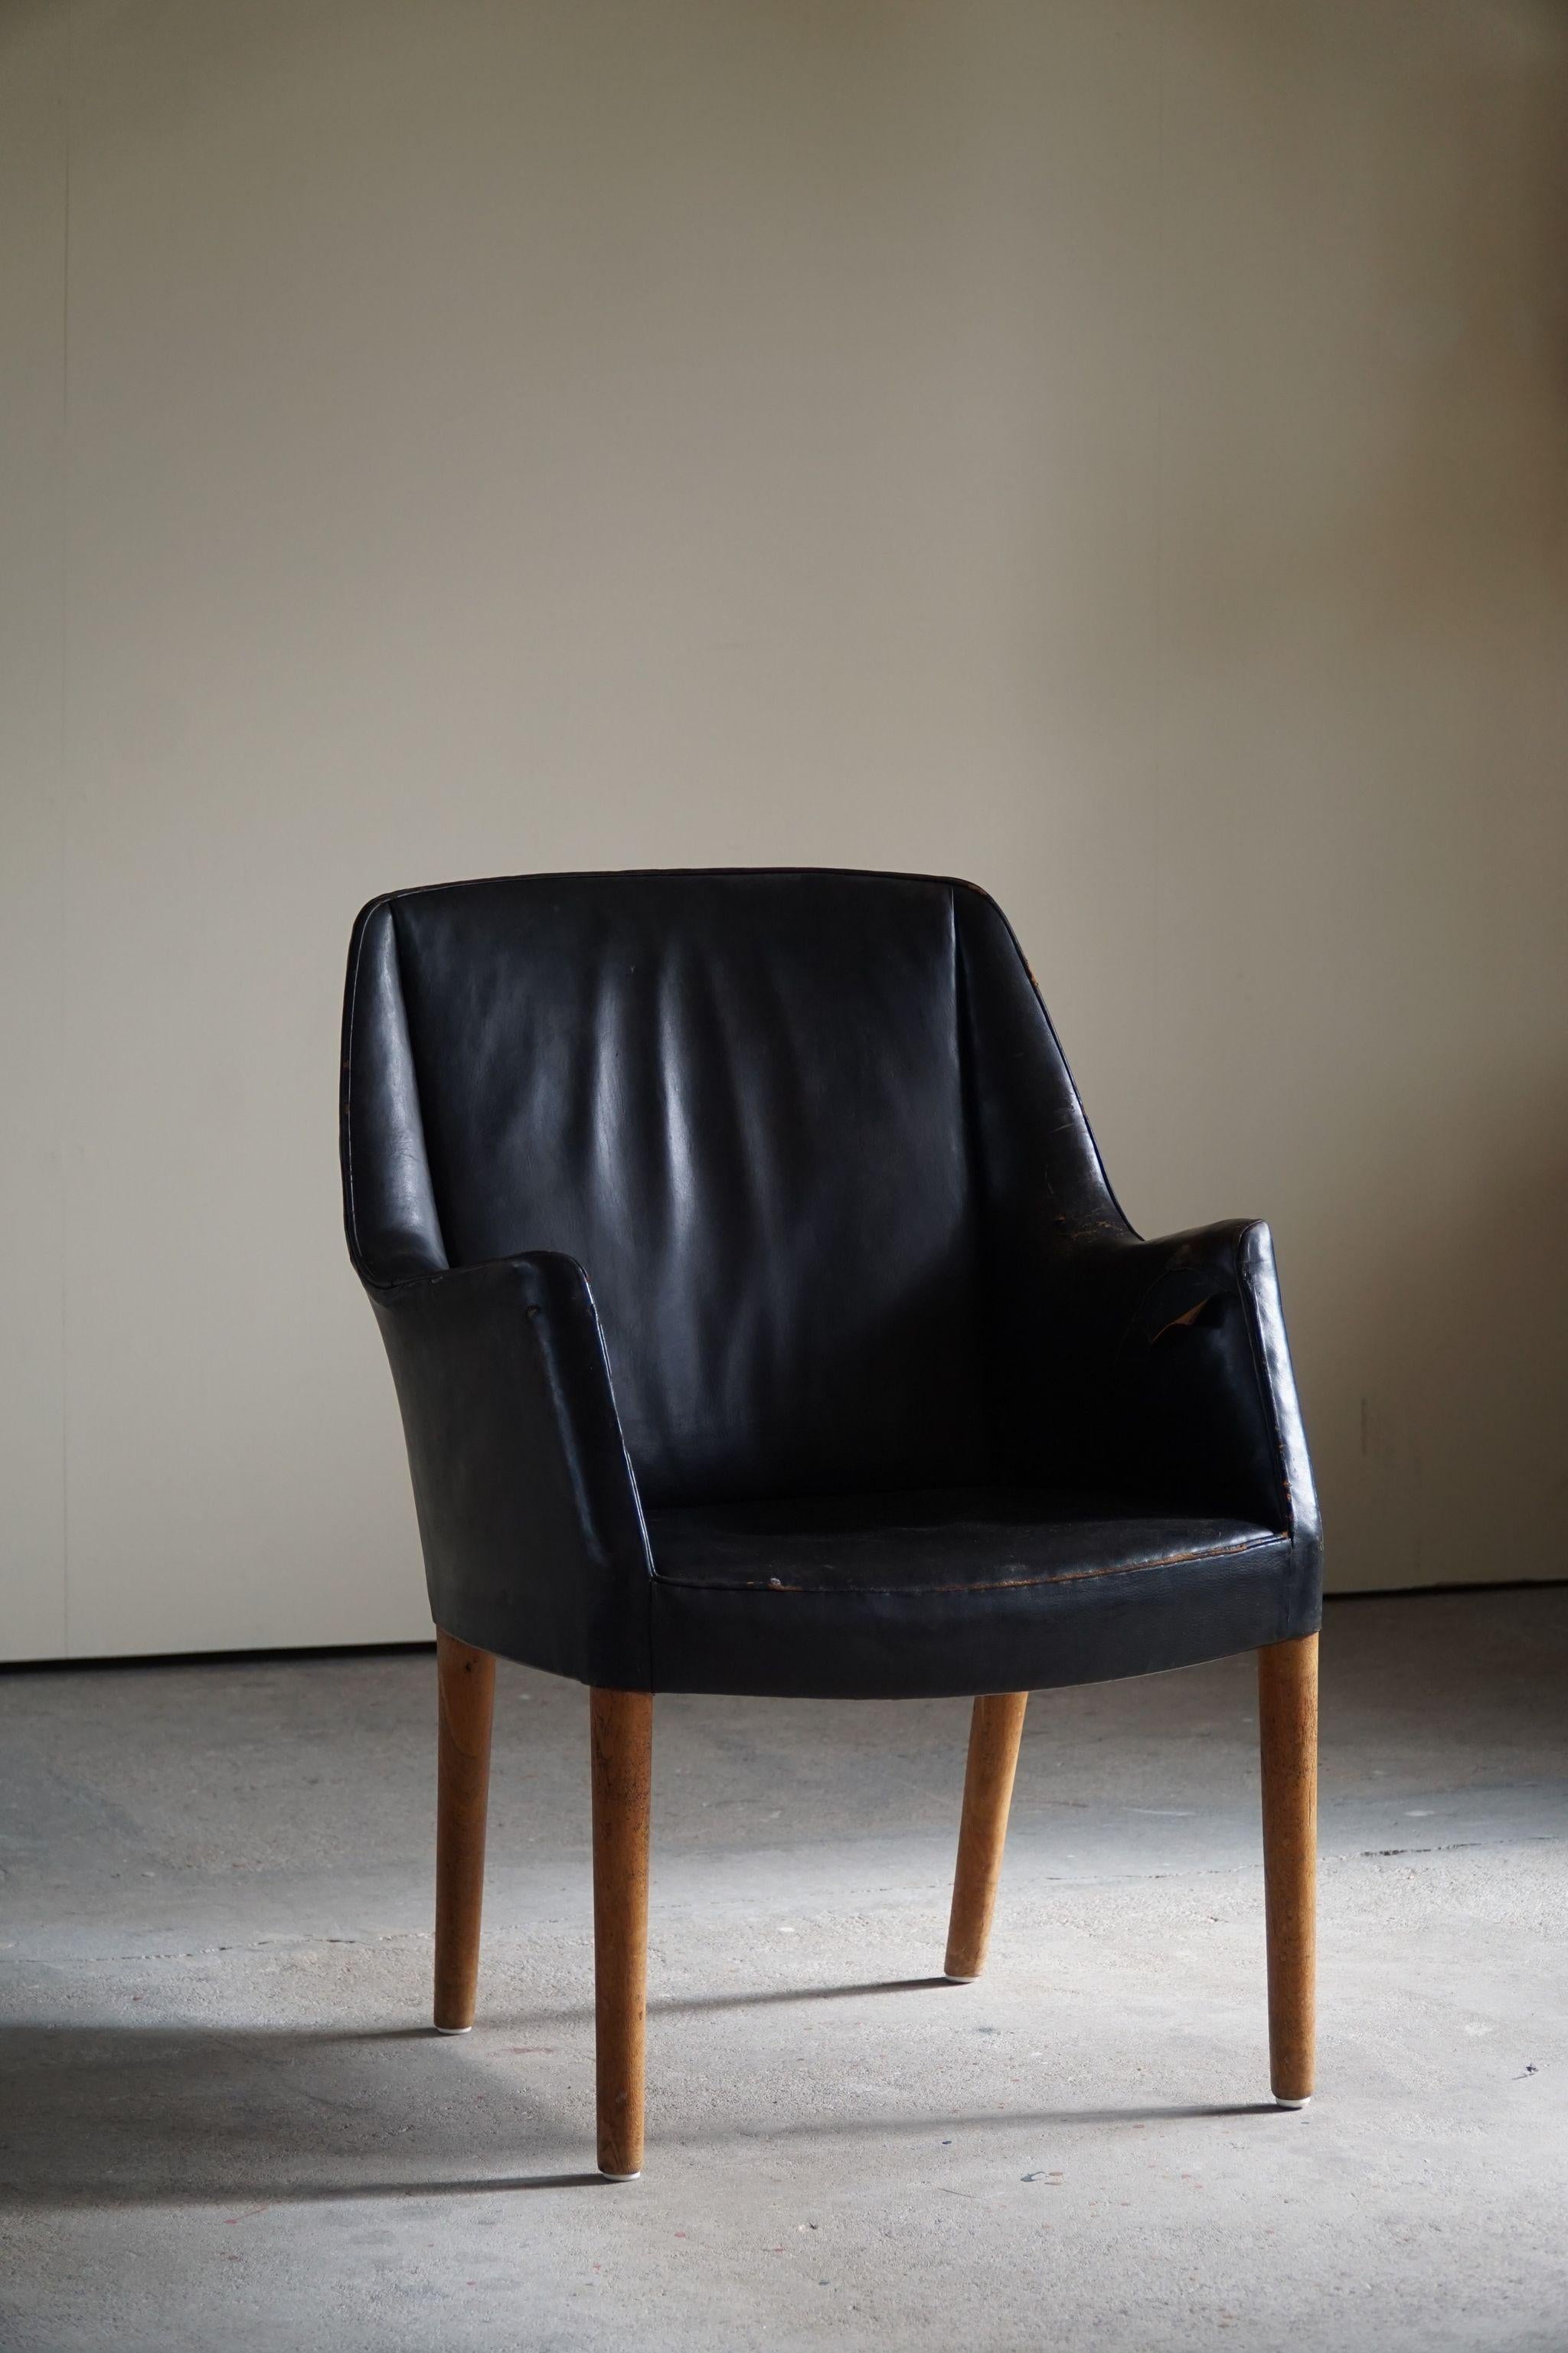 Rare fauteuil en chêne et cuir noir joliment patiné. Conçu par Nanna Ditzel pour le tribunal du comté de Copenhague. Cet exemple n'est fabriqué qu'en quelques exemplaires et constitue donc une pièce de collection rare. 

Documenté par une maison